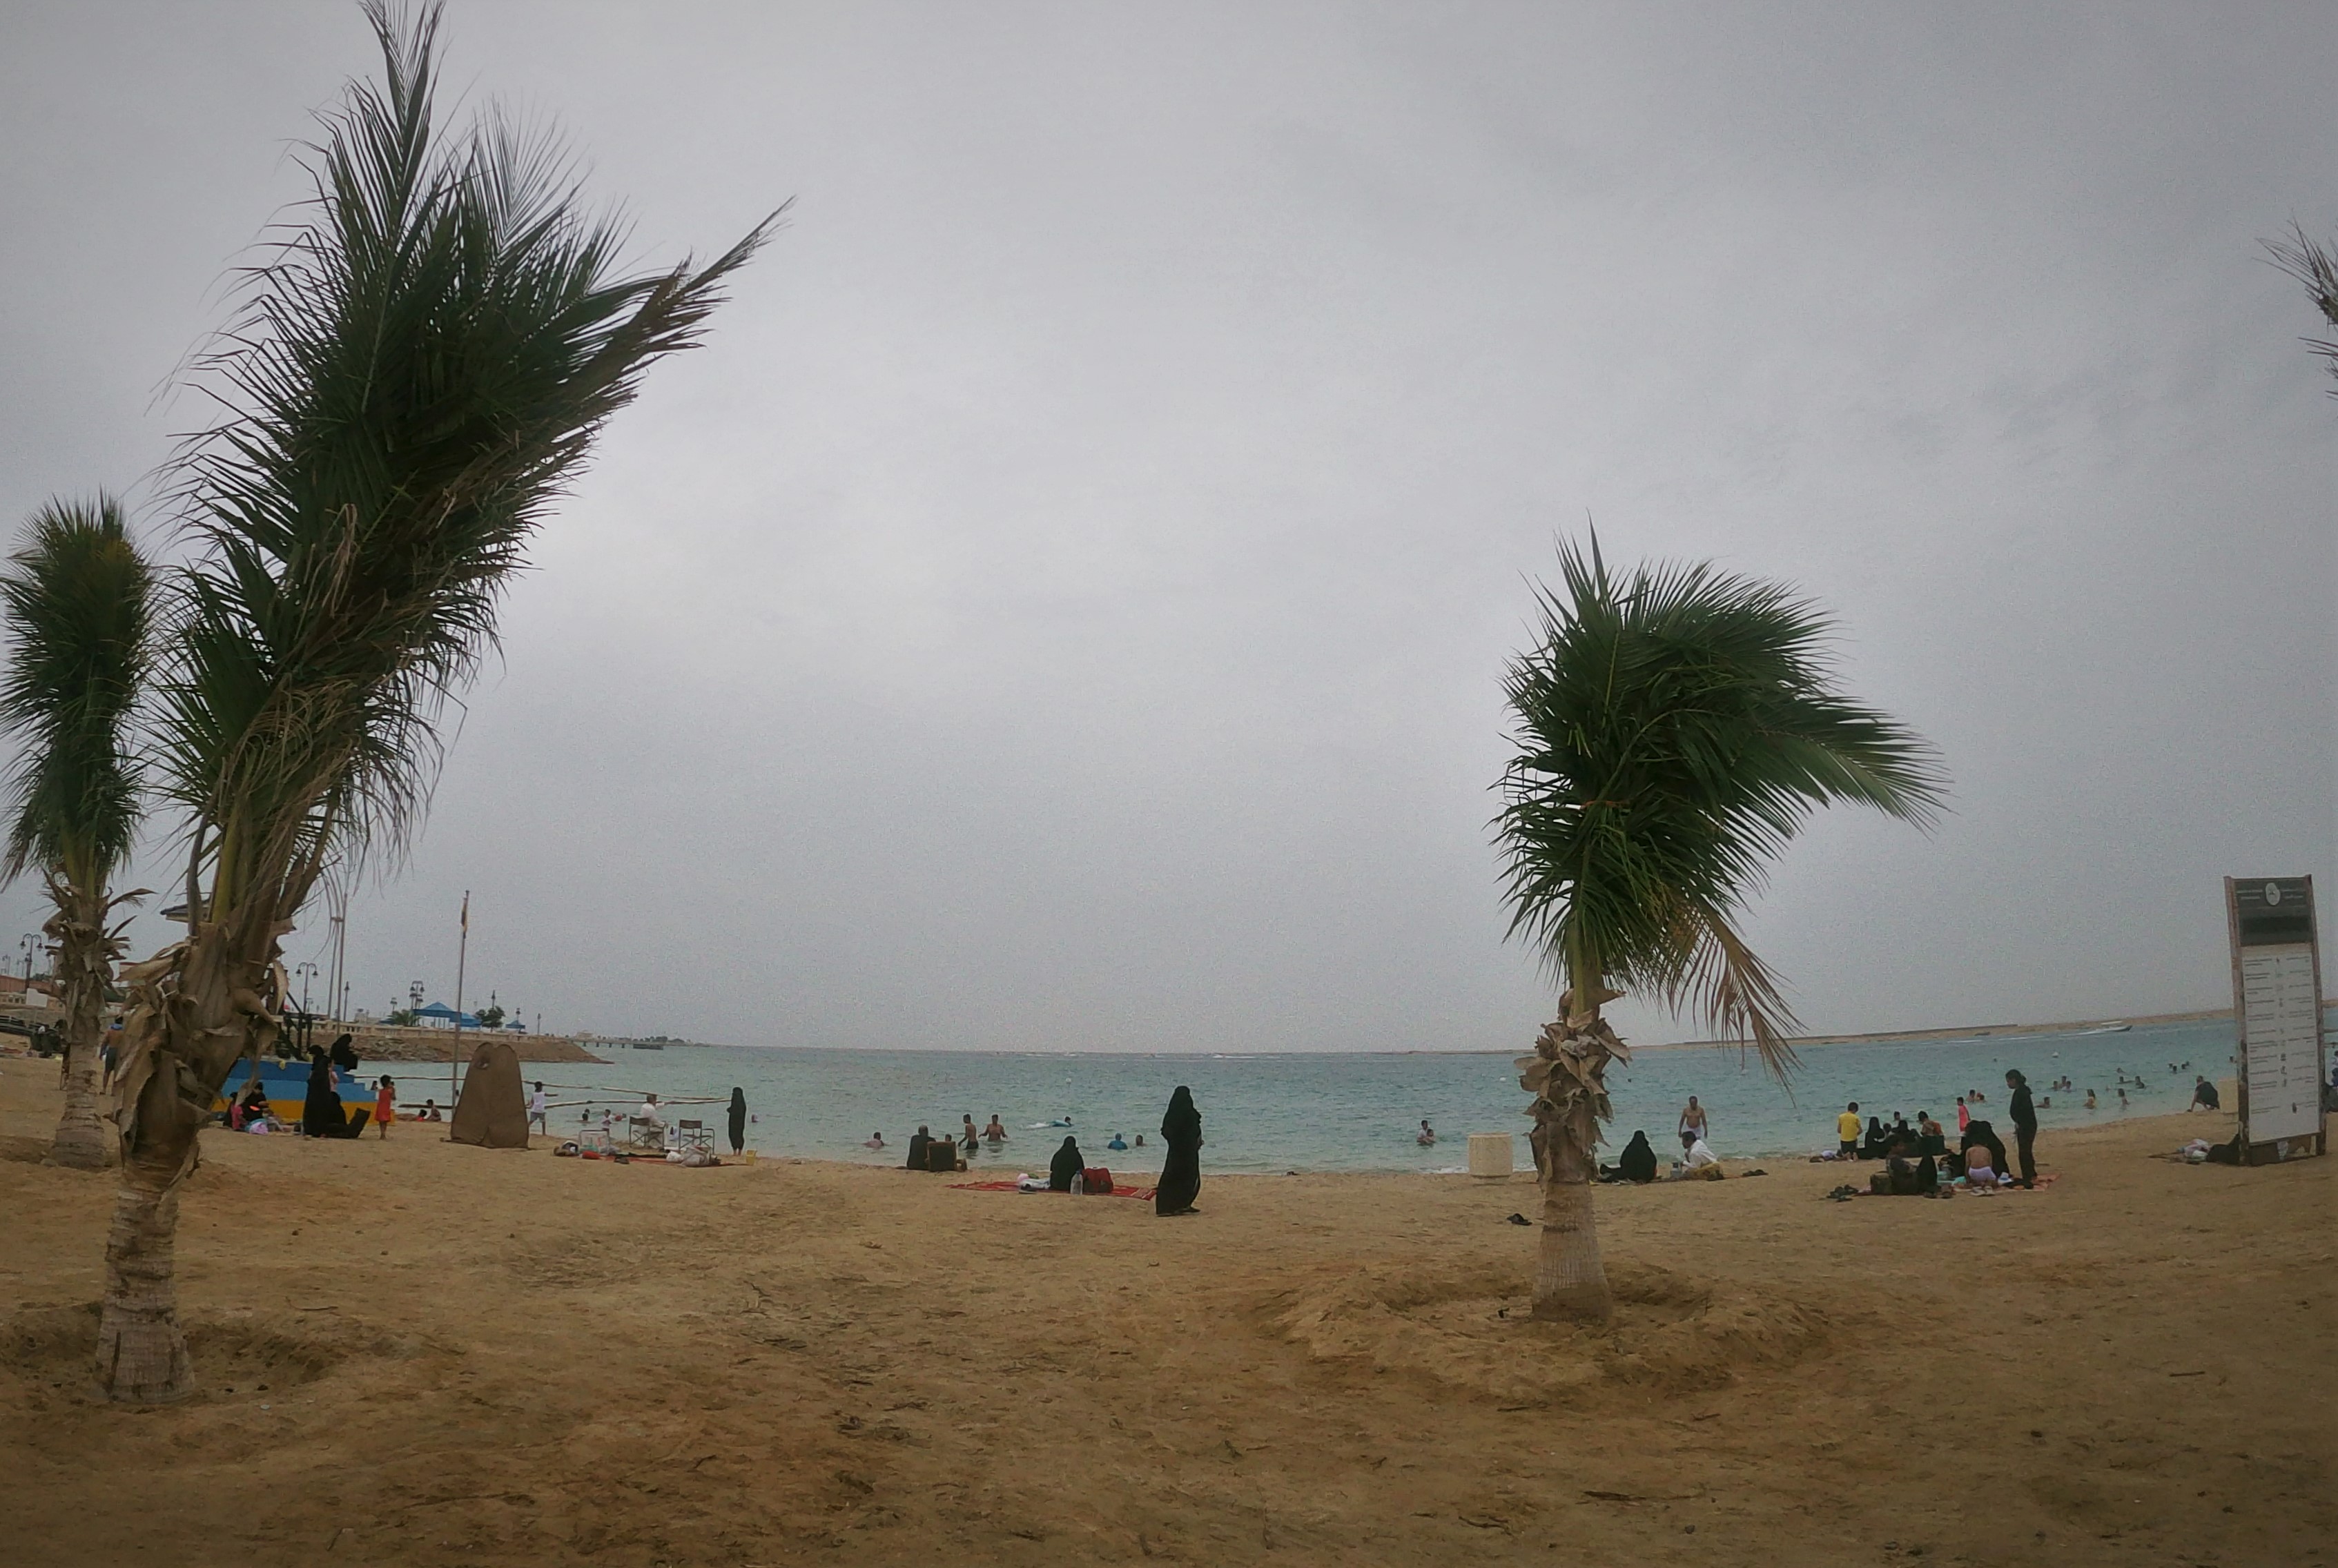 Plaja publica din Yanbu, Arabia Saudita